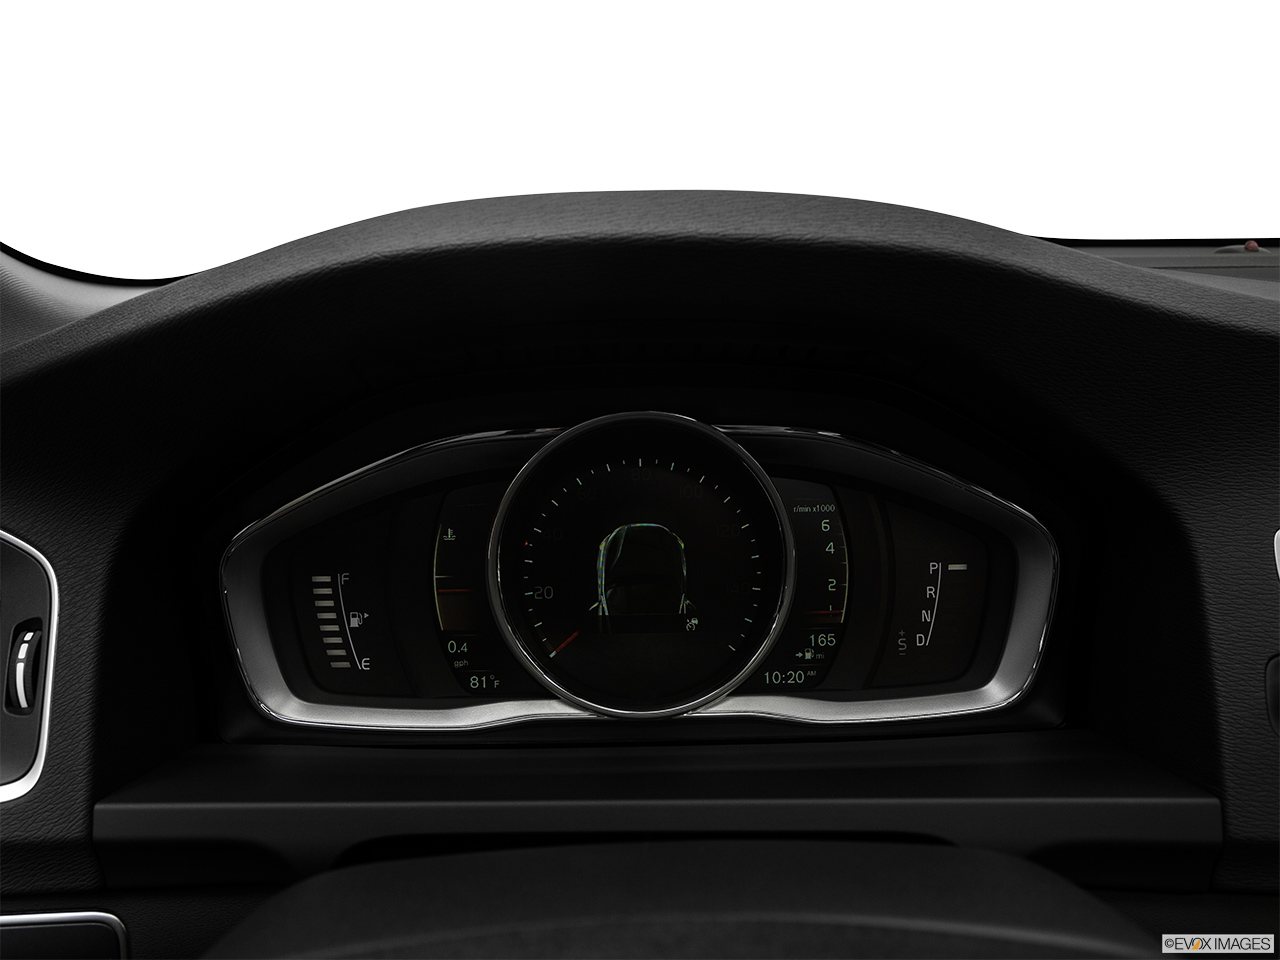 2018 Volvo S60 Cross Country T5 AWD Speedometer/tachometer. 